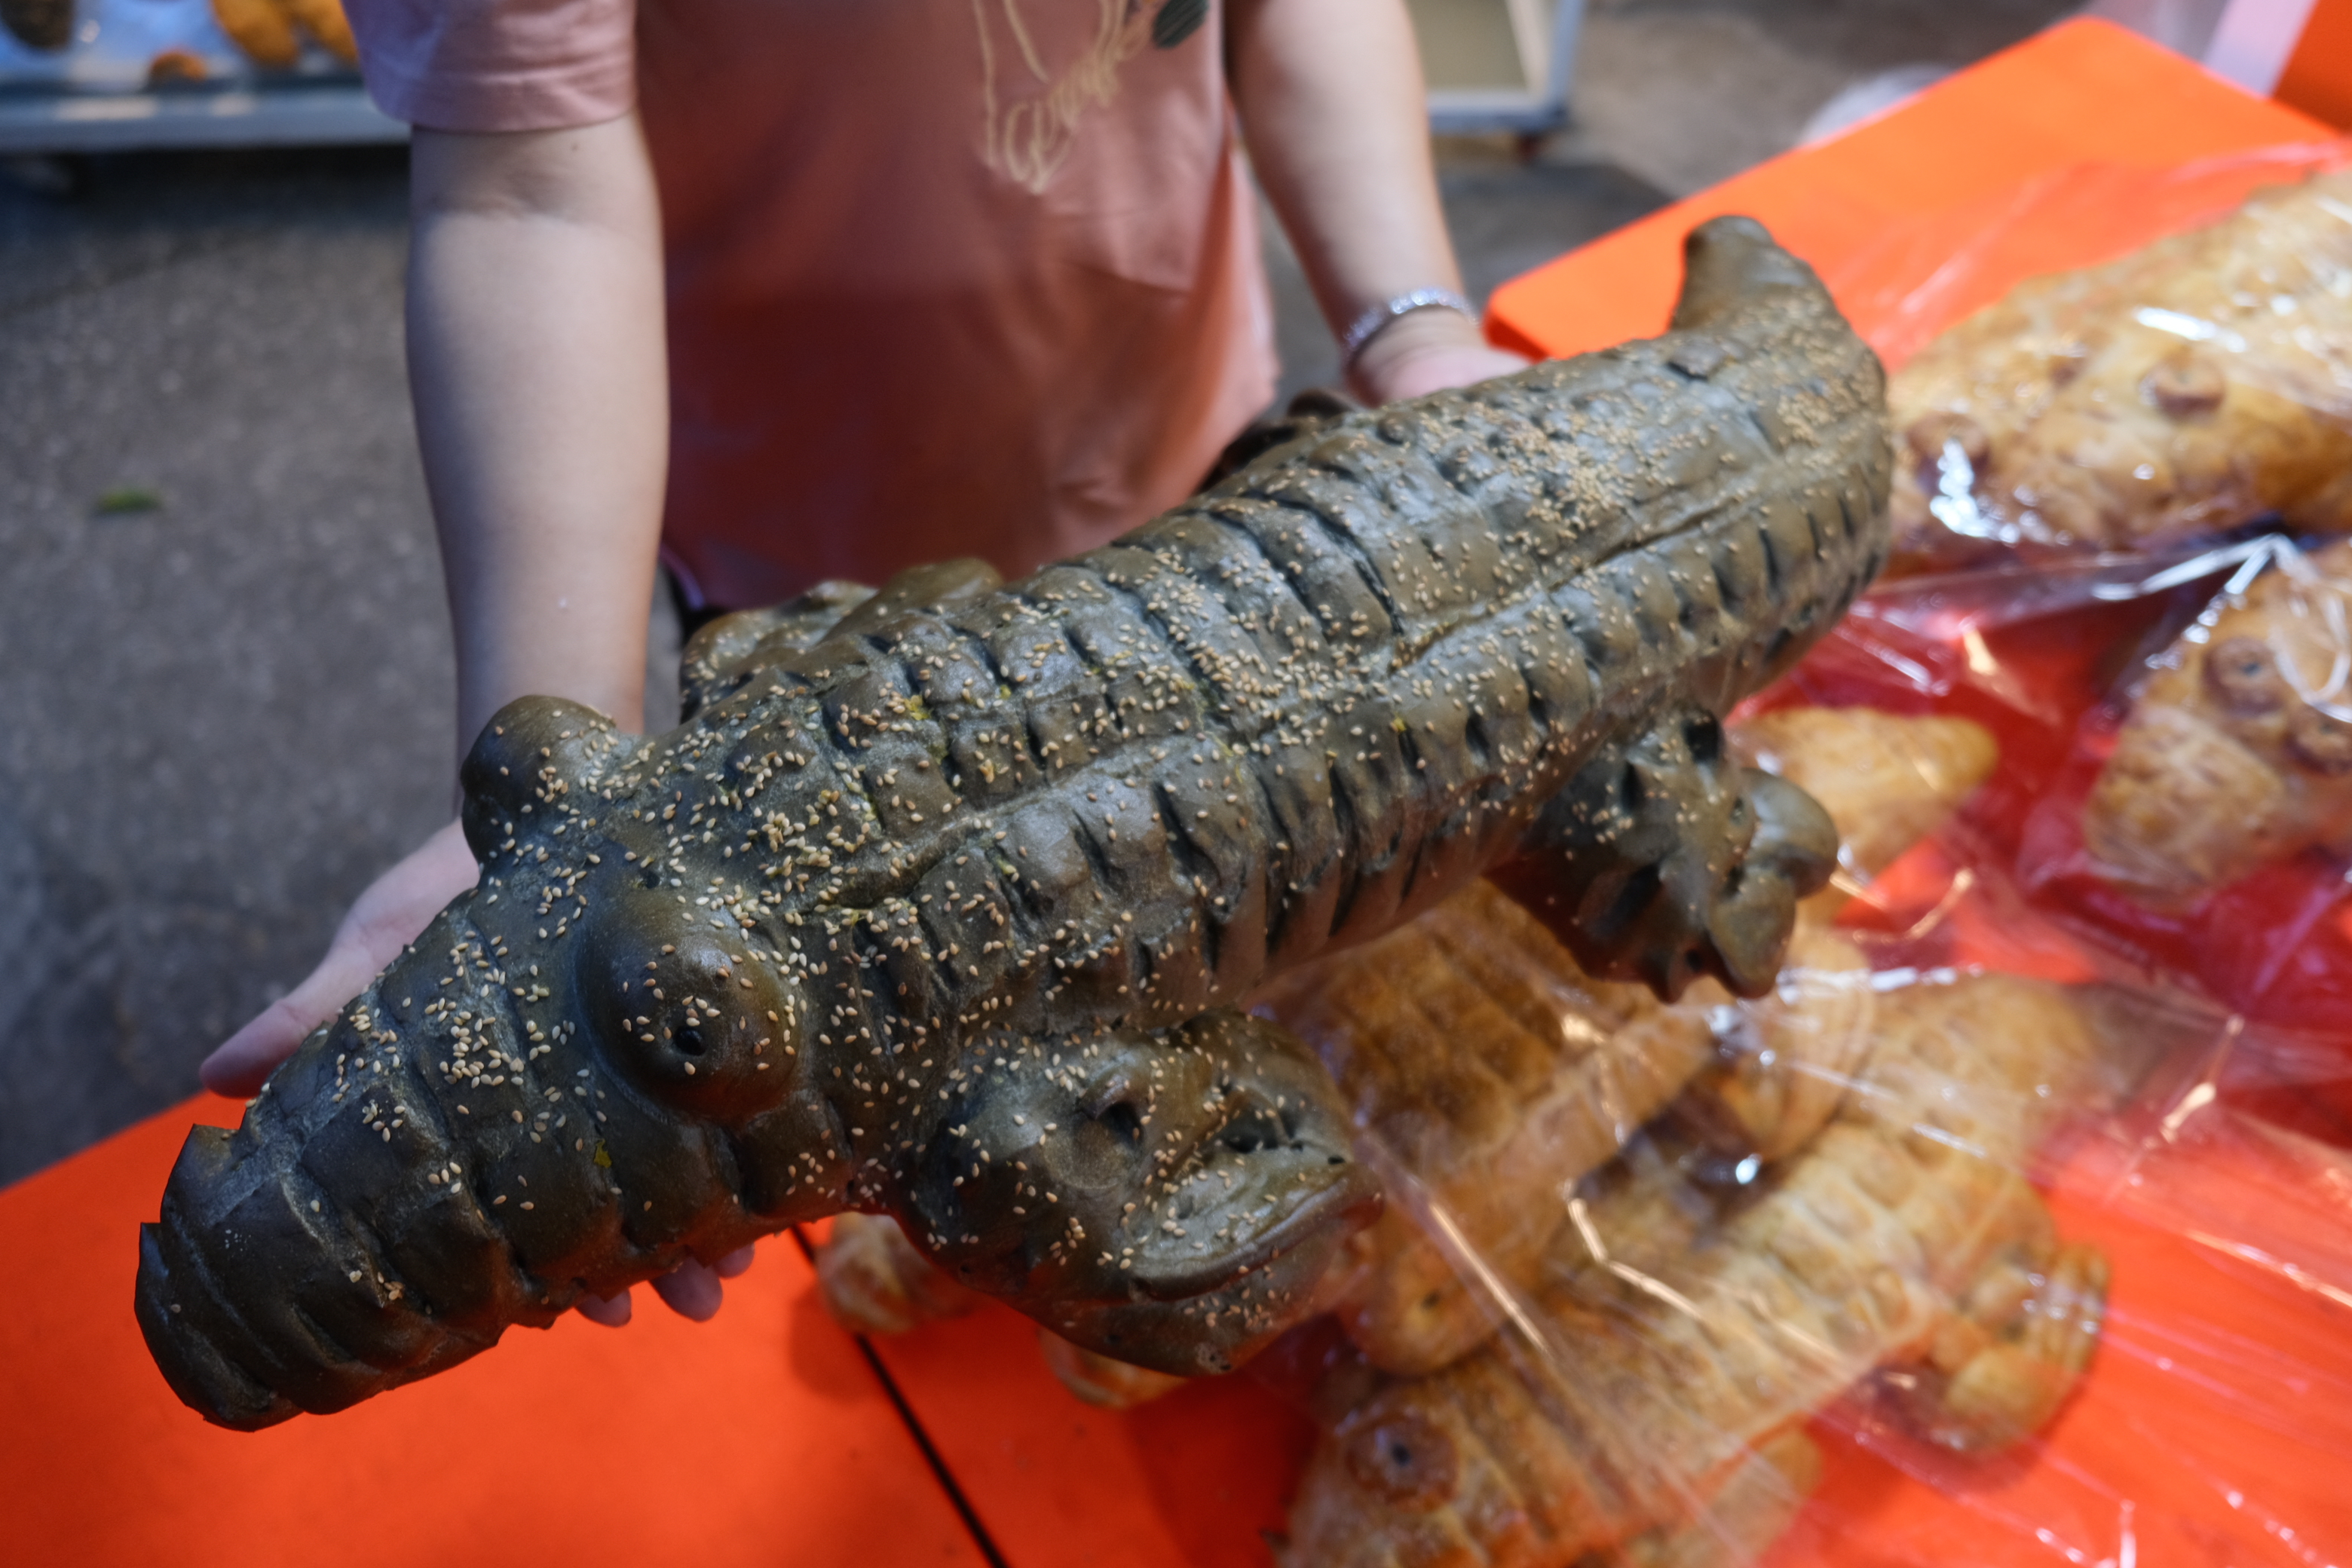 A crocodile-shaped bread at the bakery. Photo: Ngoc Phuong / Tuoi Tre News